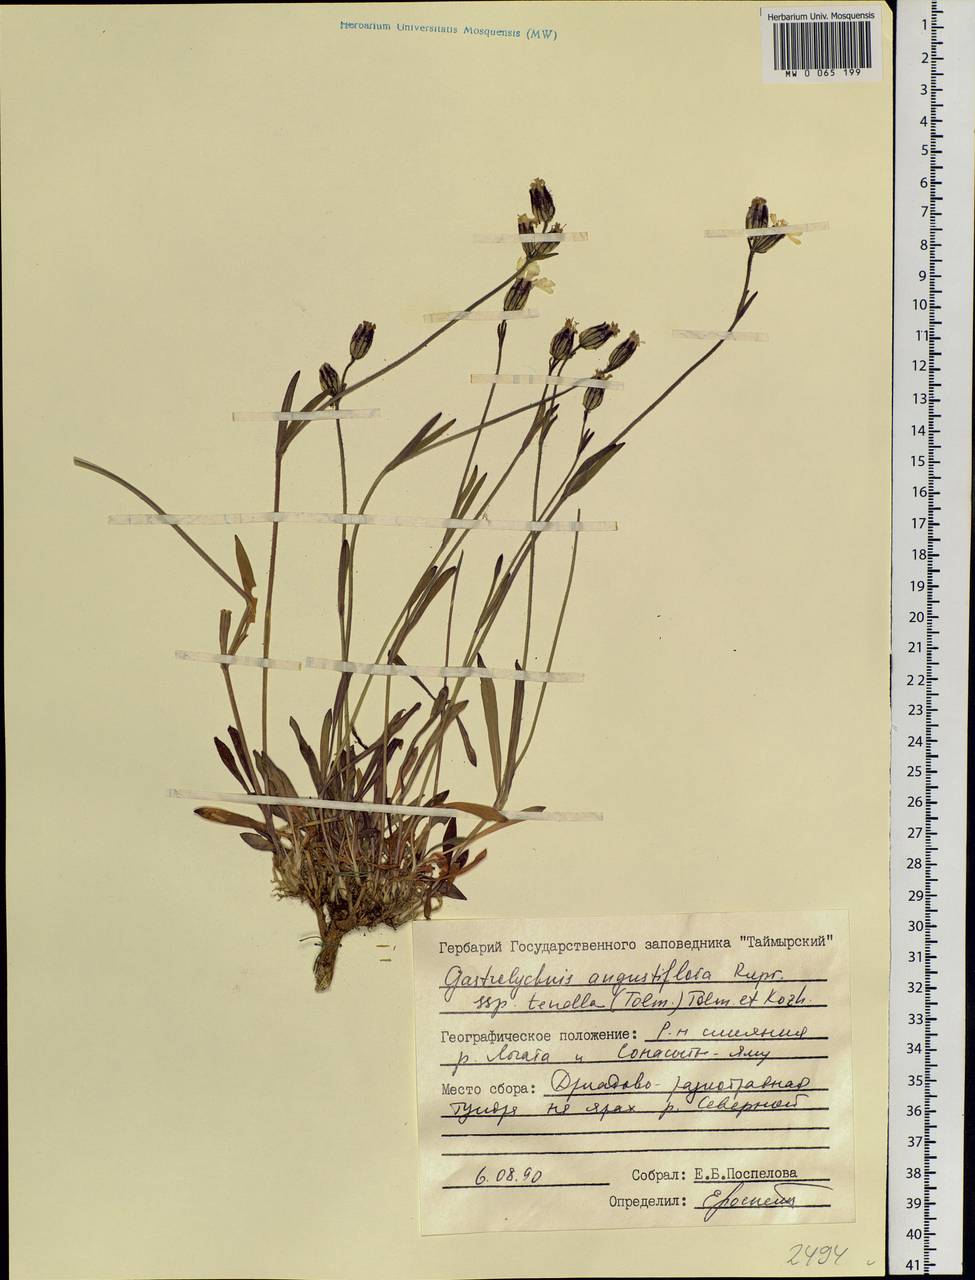 Silene involucrata subsp. tenella (Tolm.) Bocquet, Siberia, Central Siberia (S3) (Russia)